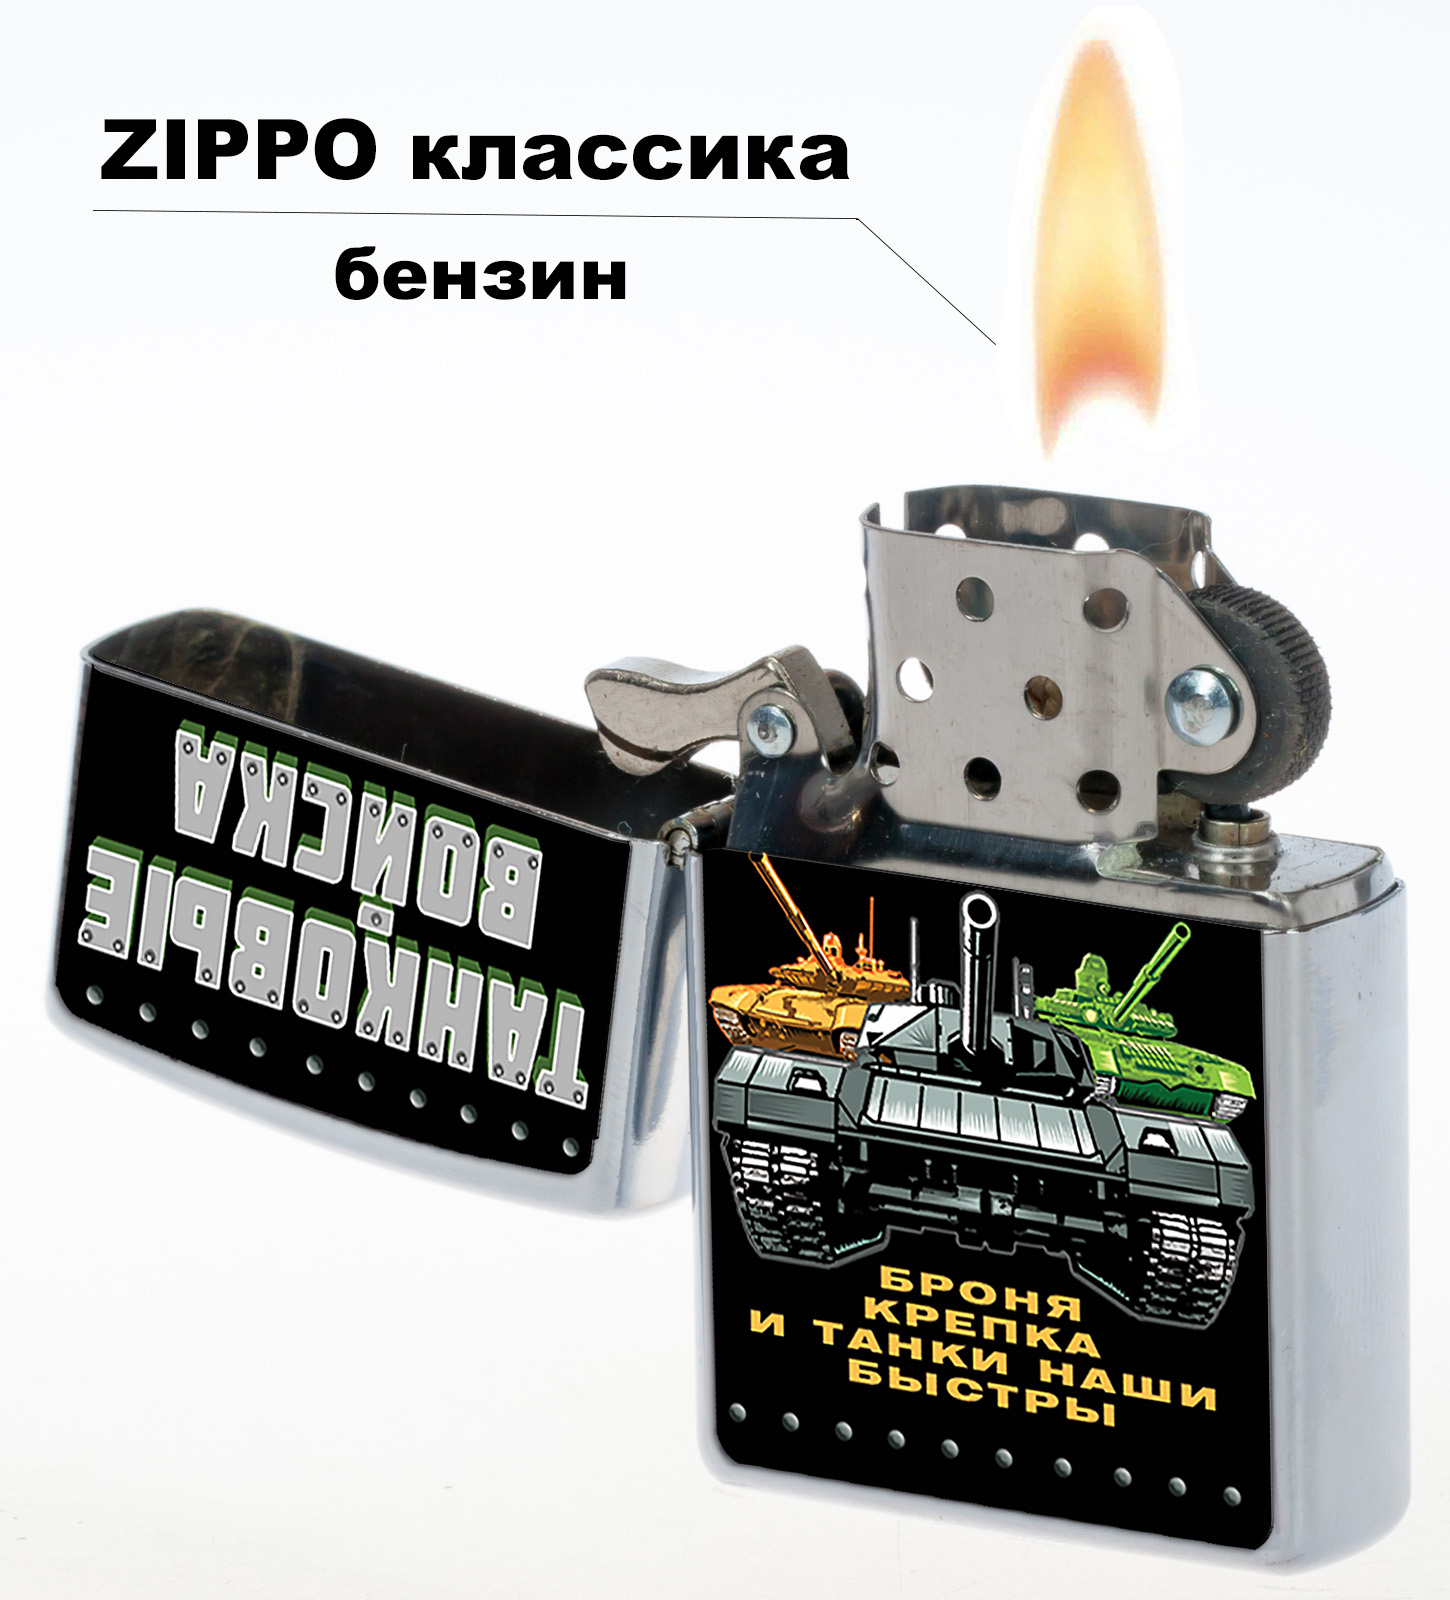 Купить бензиновую зажигалку "Танковые войска" в Военпро